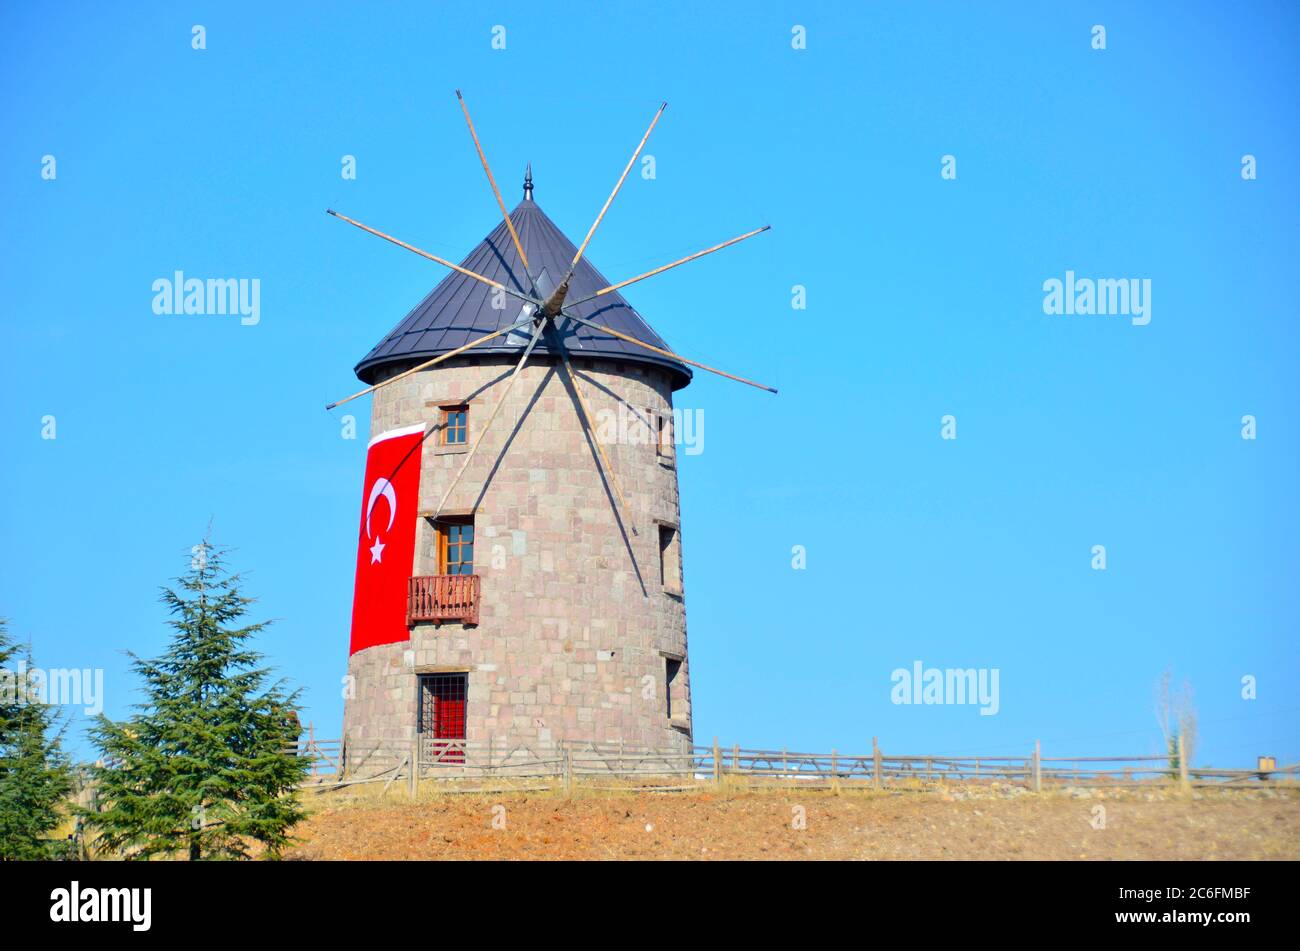 Wind mild in Altinkoy village, Ankara Stock Photo